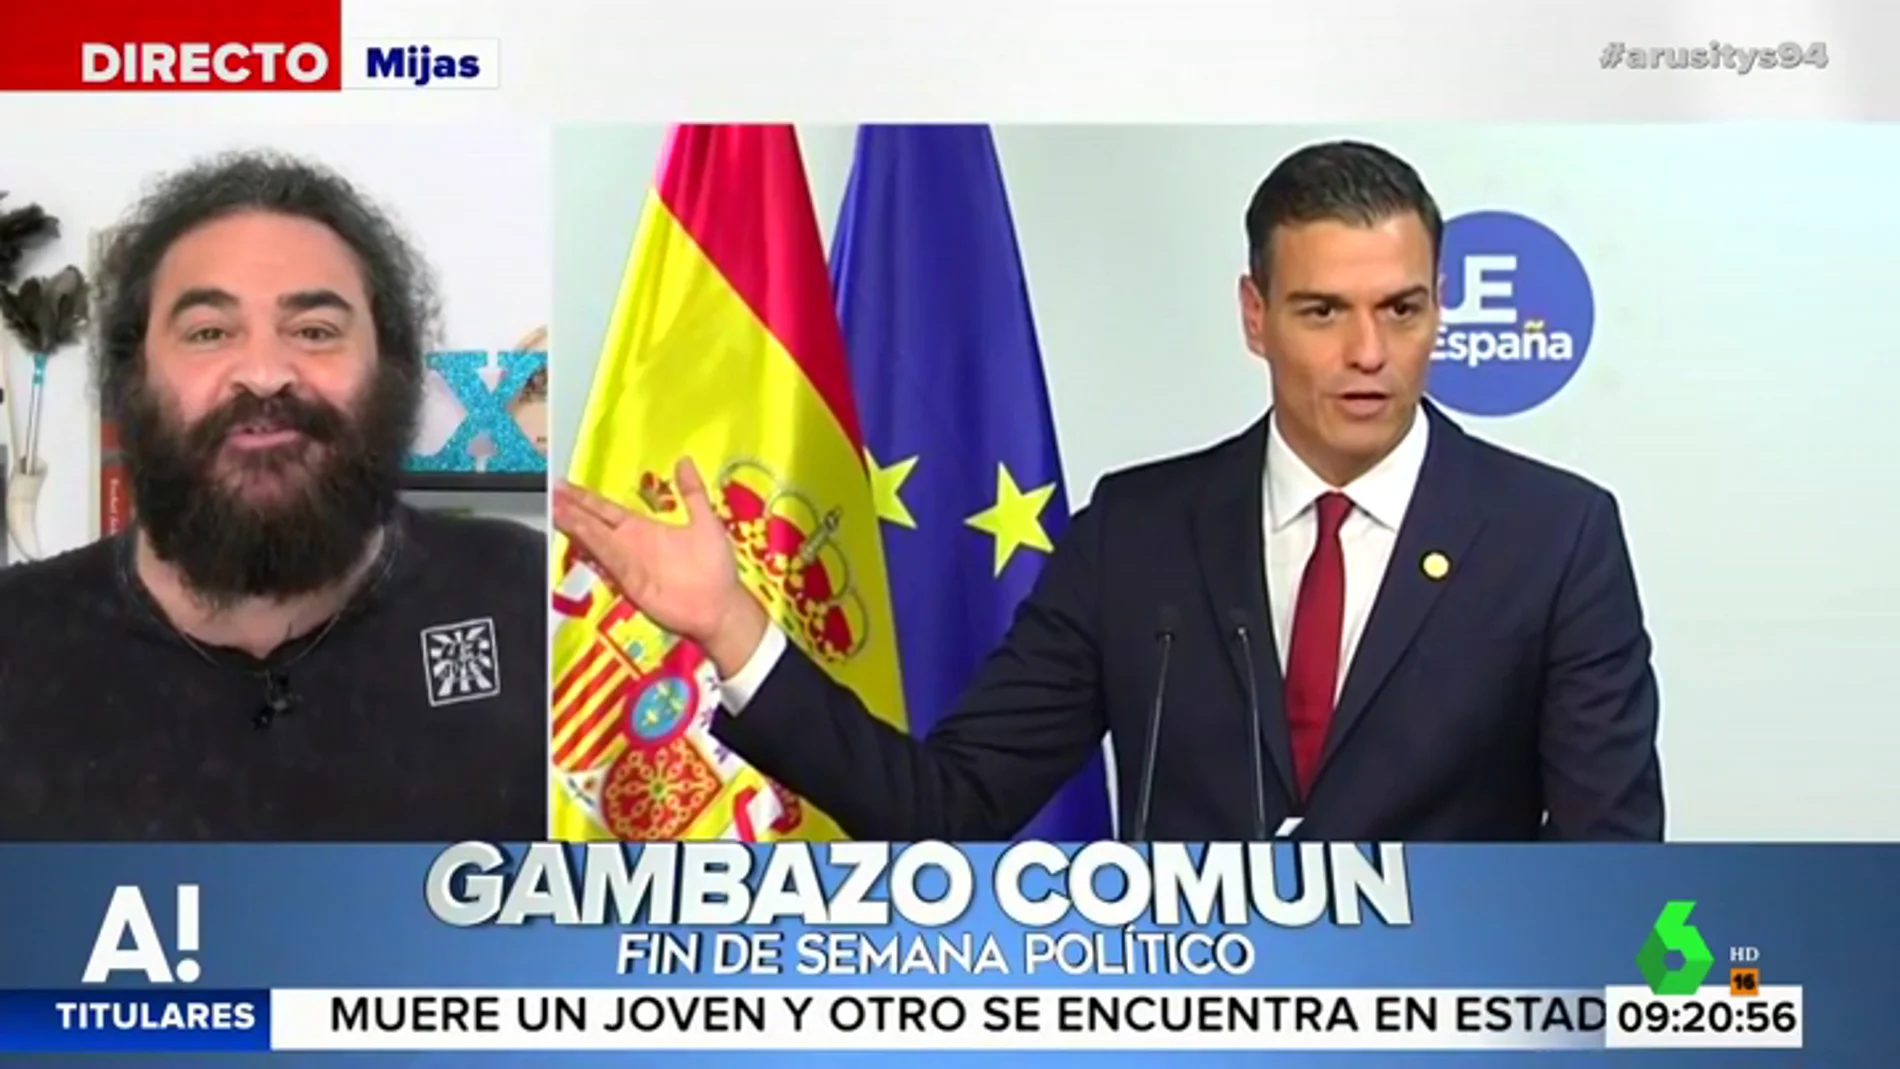 El Sevilla y "los gambazos políticos" de PP, Ciudadanos y PSOE: "Todos hablan de su partido y de banderas"